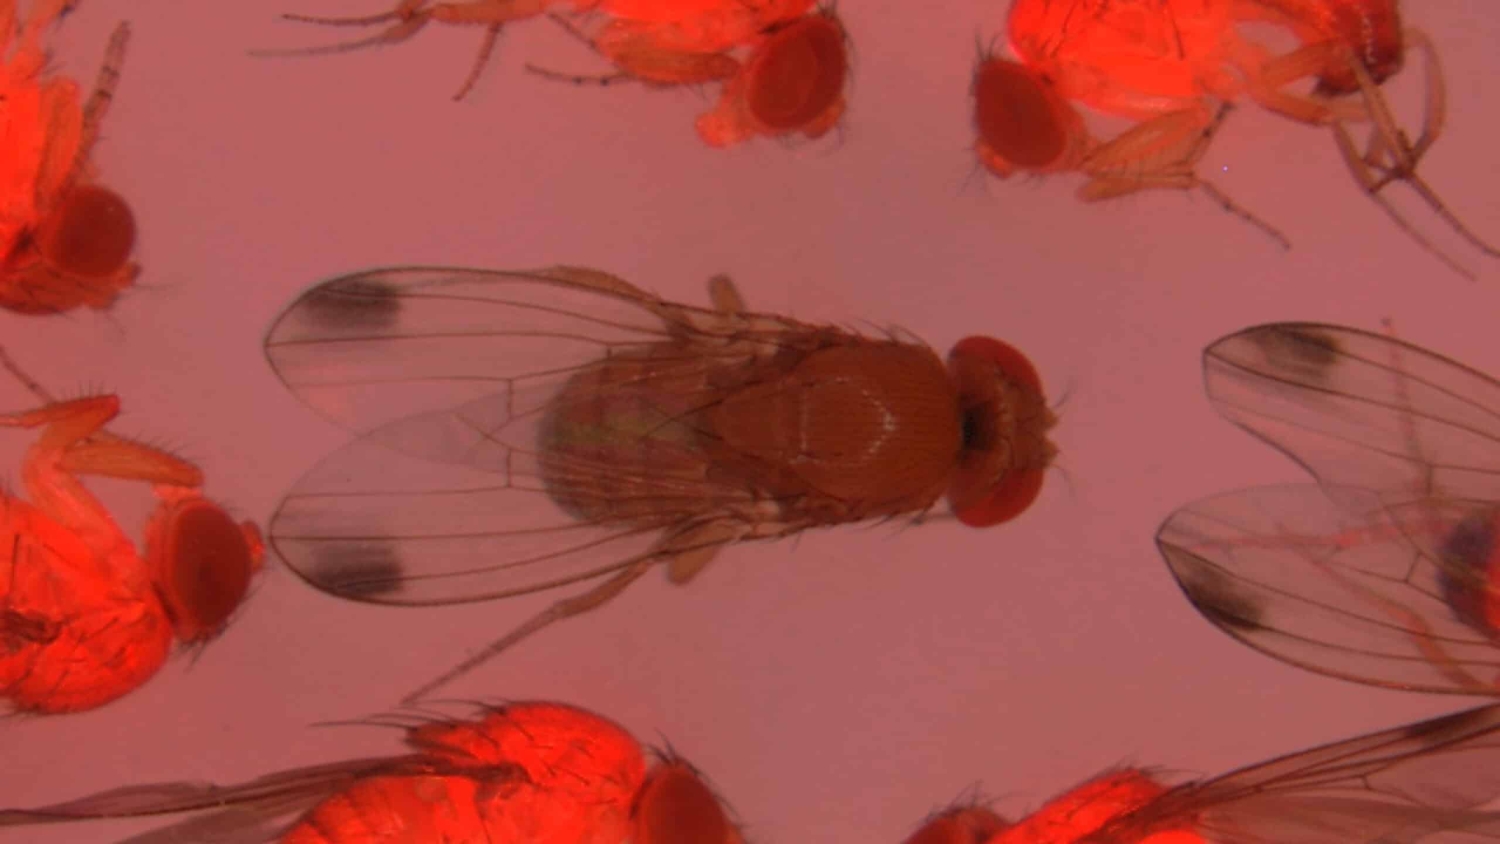 Drosophila suzukii vinegar flies